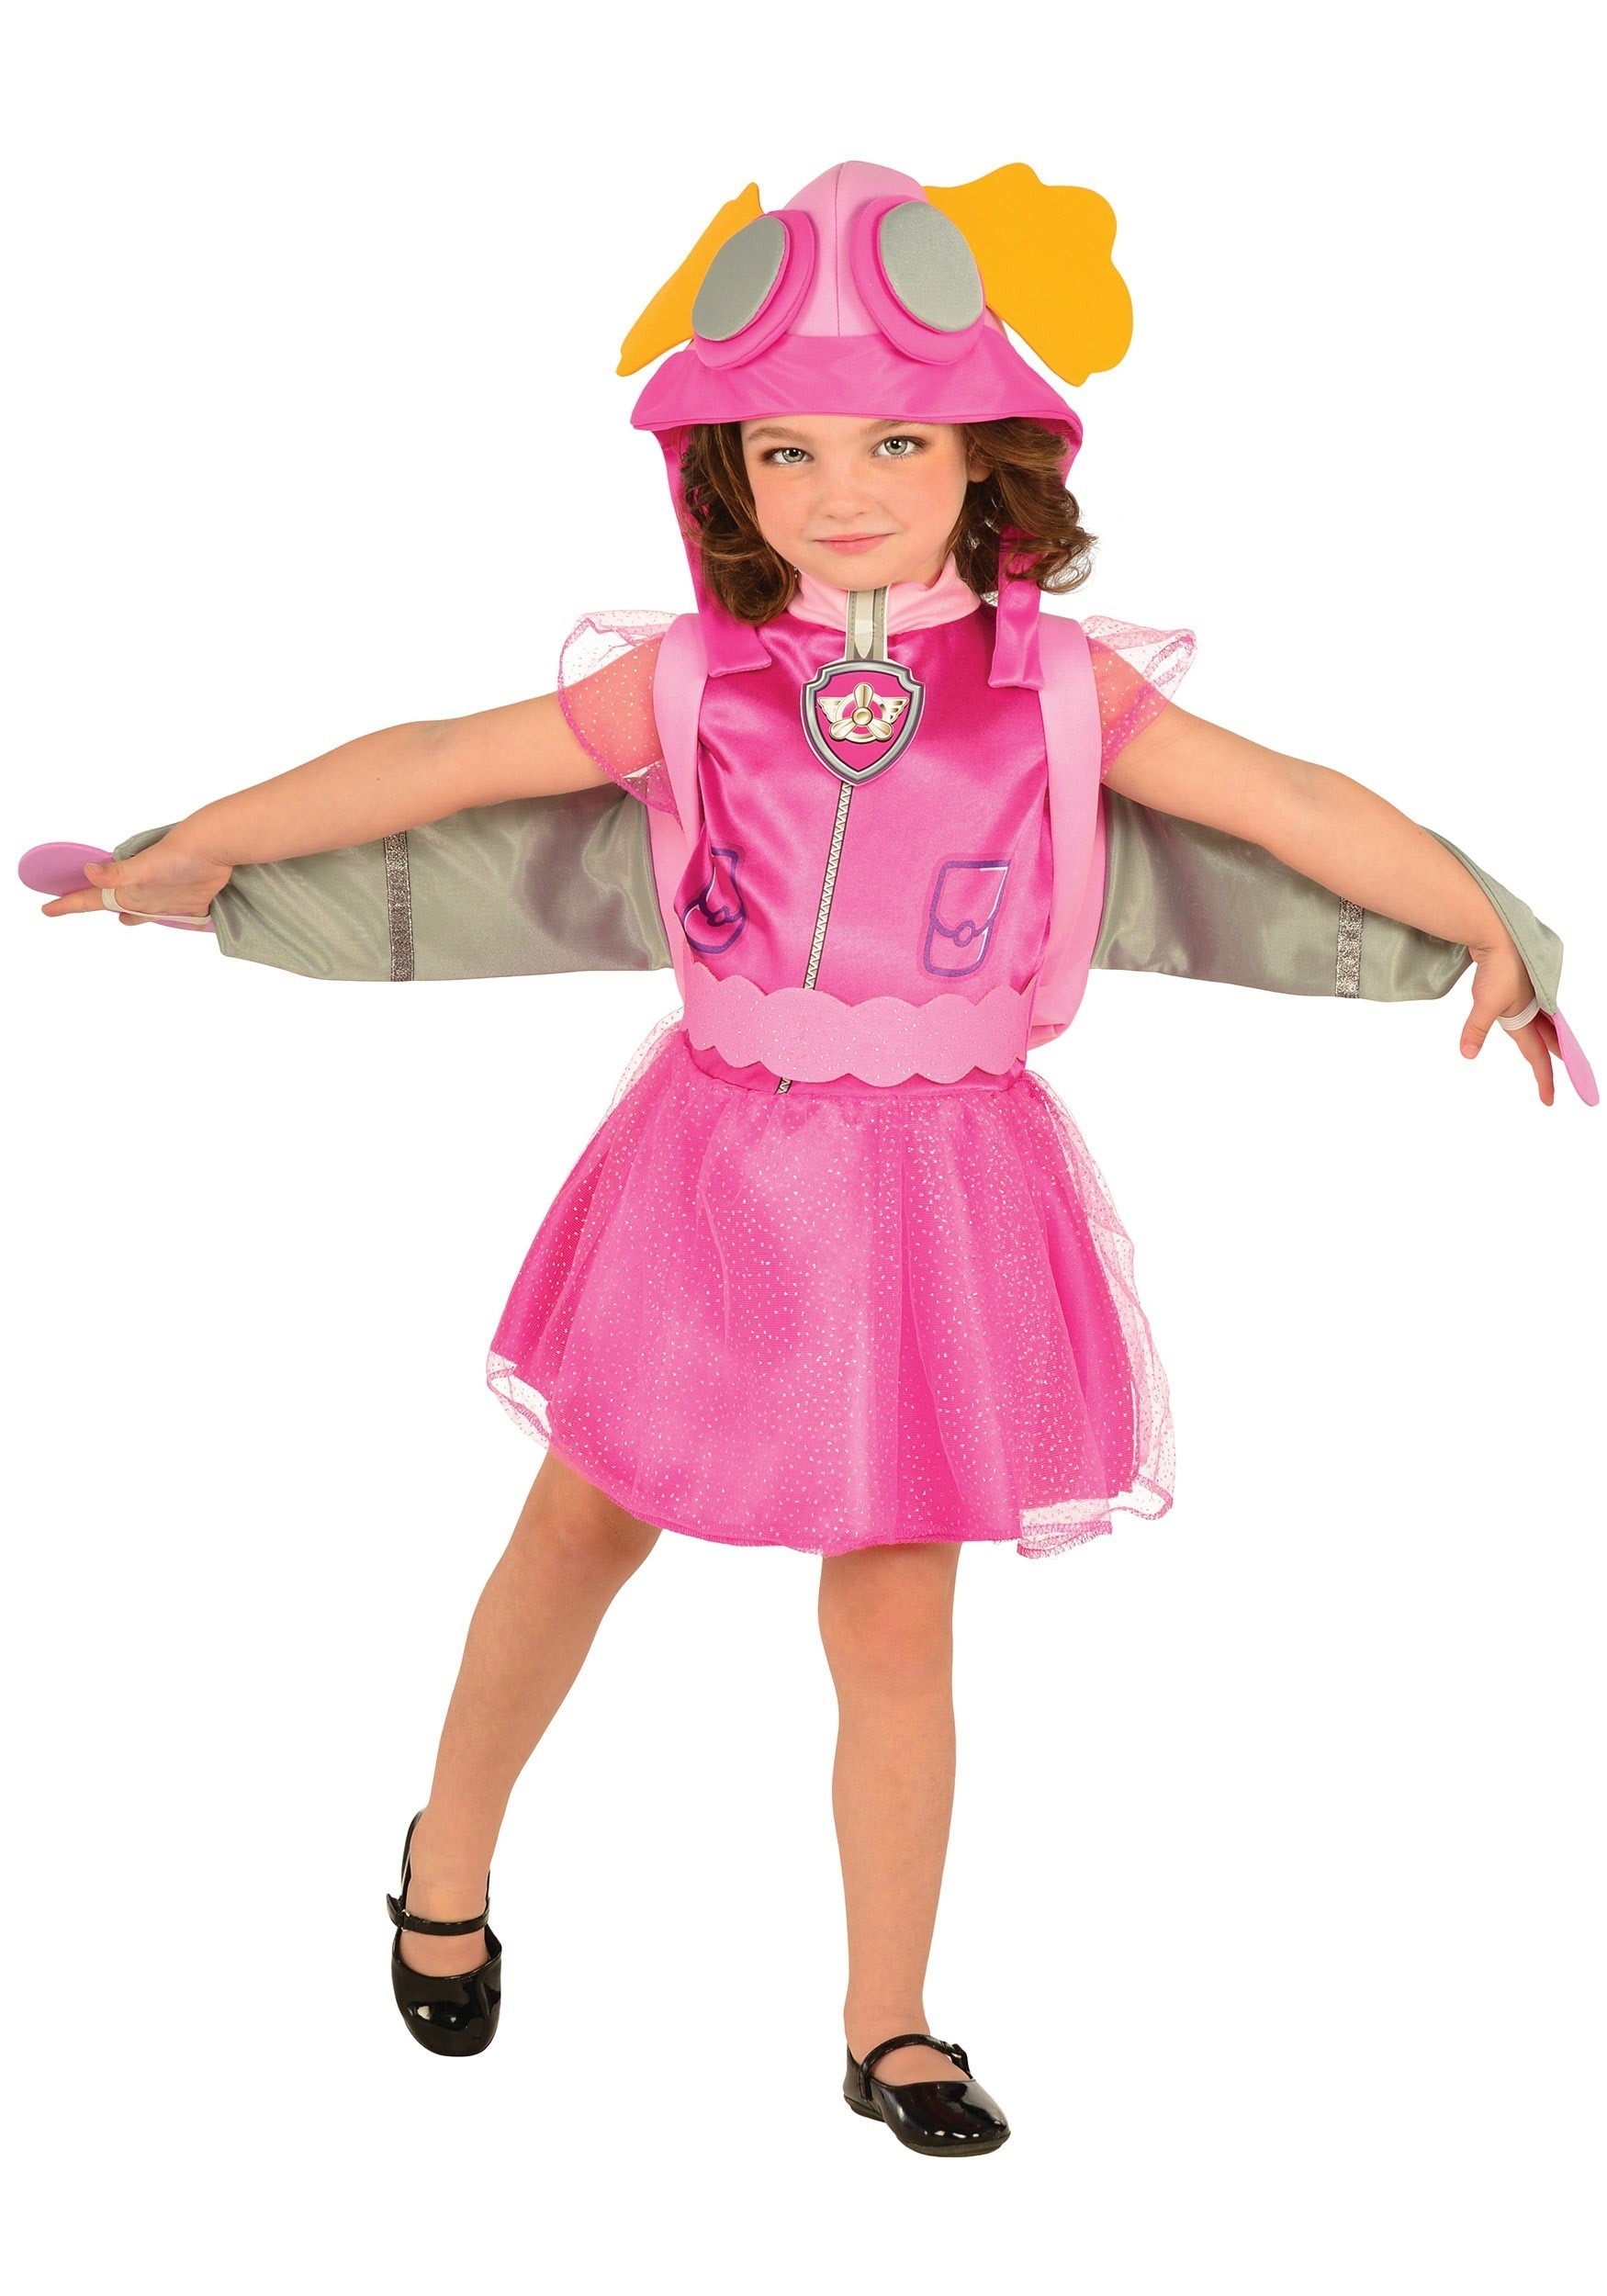 Image of Kid's Paw Patrol Skye Costume | Paw Patrol Costumes ID RU610503-S